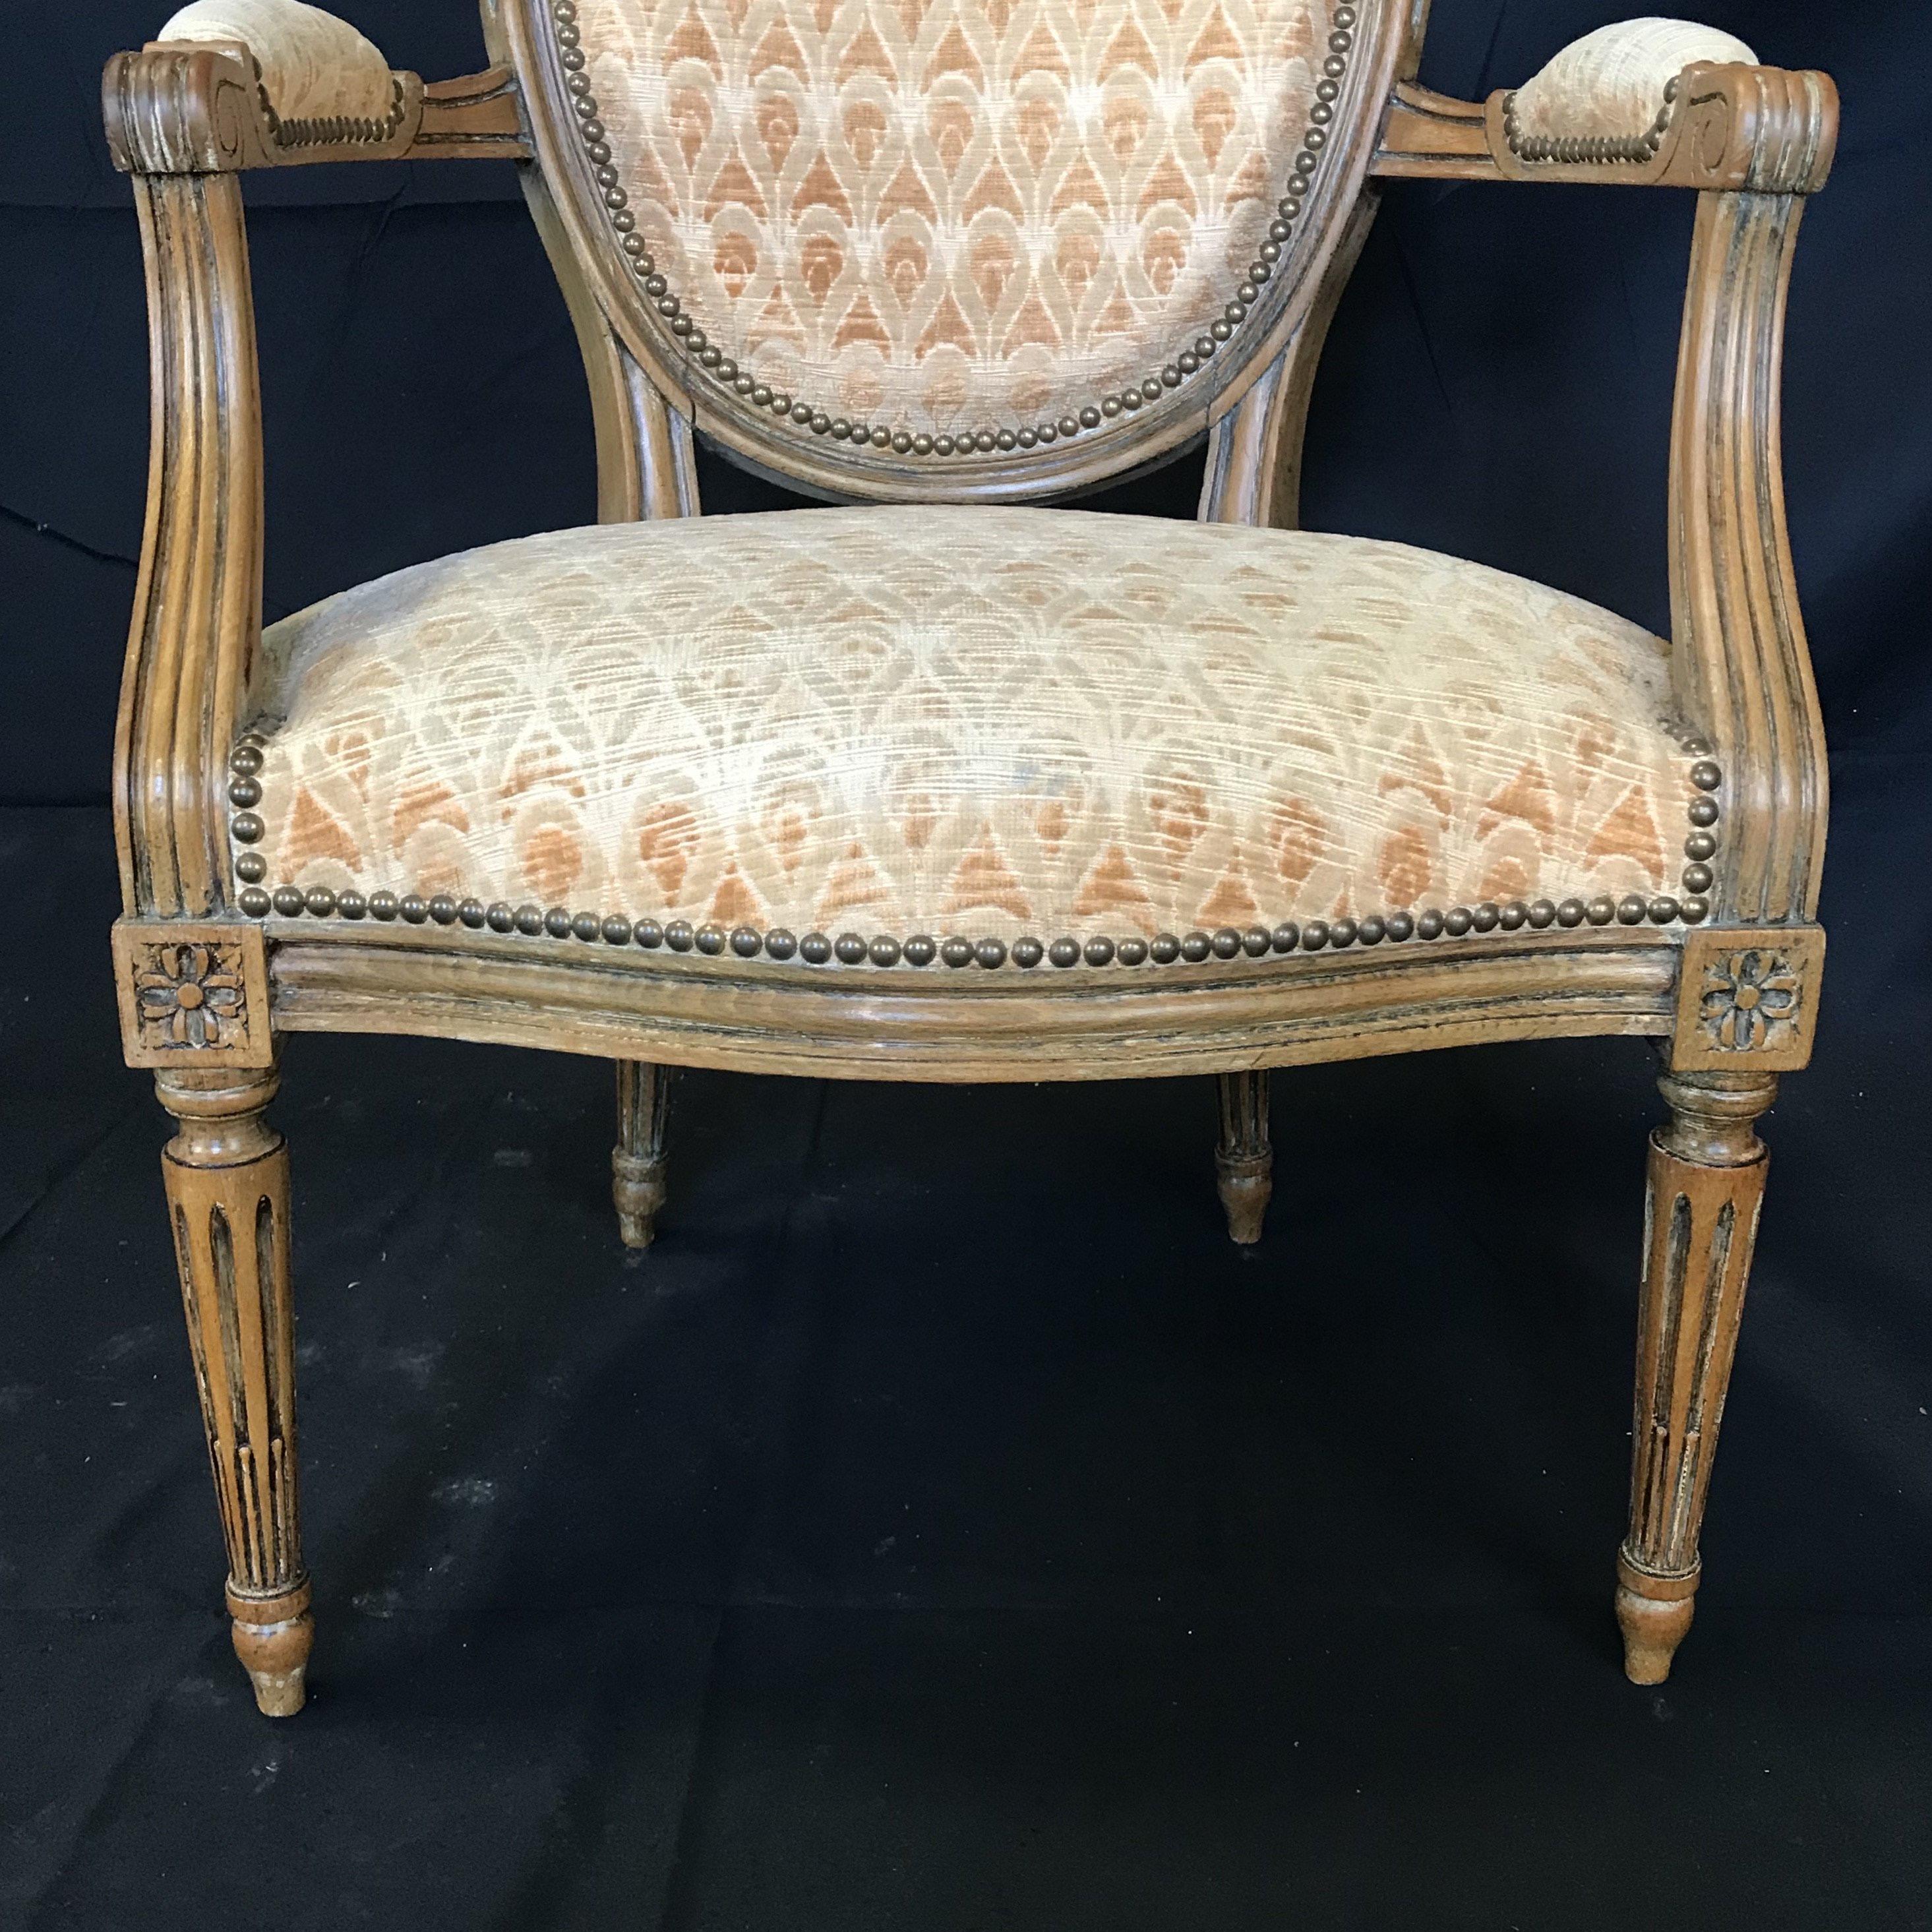 Magnifique paire de fauteuils Louis XVI avec leur garniture d'origine or pâle en très bon état ! Une taille idéale pour les chaises d'appoint, les fauteuils ou les chaises de salle à manger d'appoint.
#4768.
   